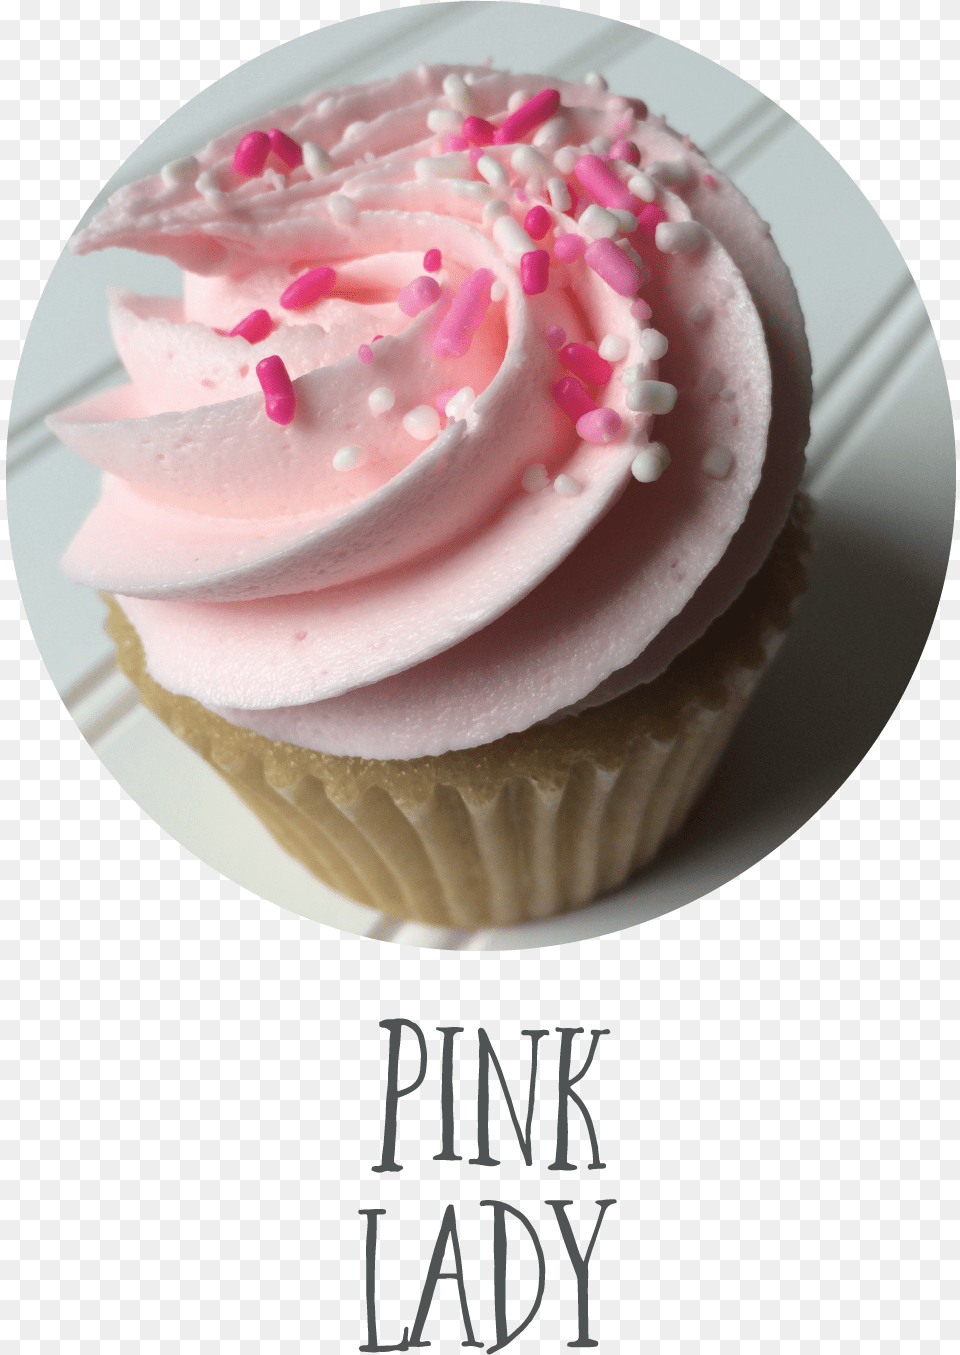 Pink Lady Cupcake, Cake, Cream, Dessert, Food Free Png Download